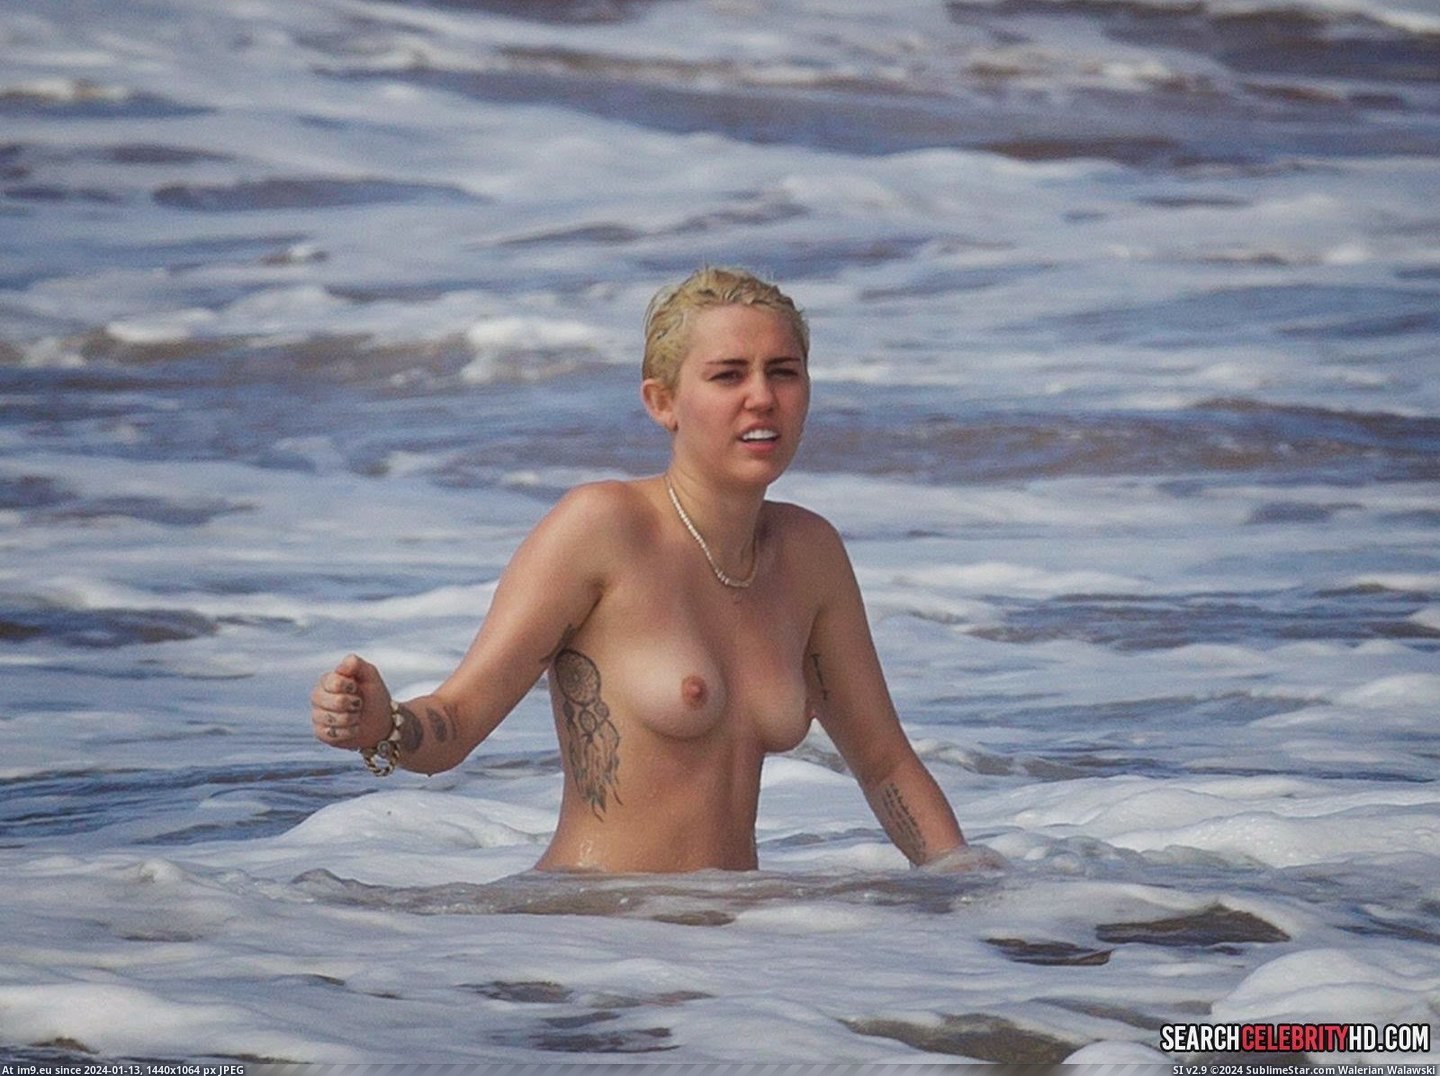 Miley Cyrus Topless Bikini Candid Photos In Hawaii (18) (in Miley Cyrus Topless Bikini Candid Photos In Hawaii)